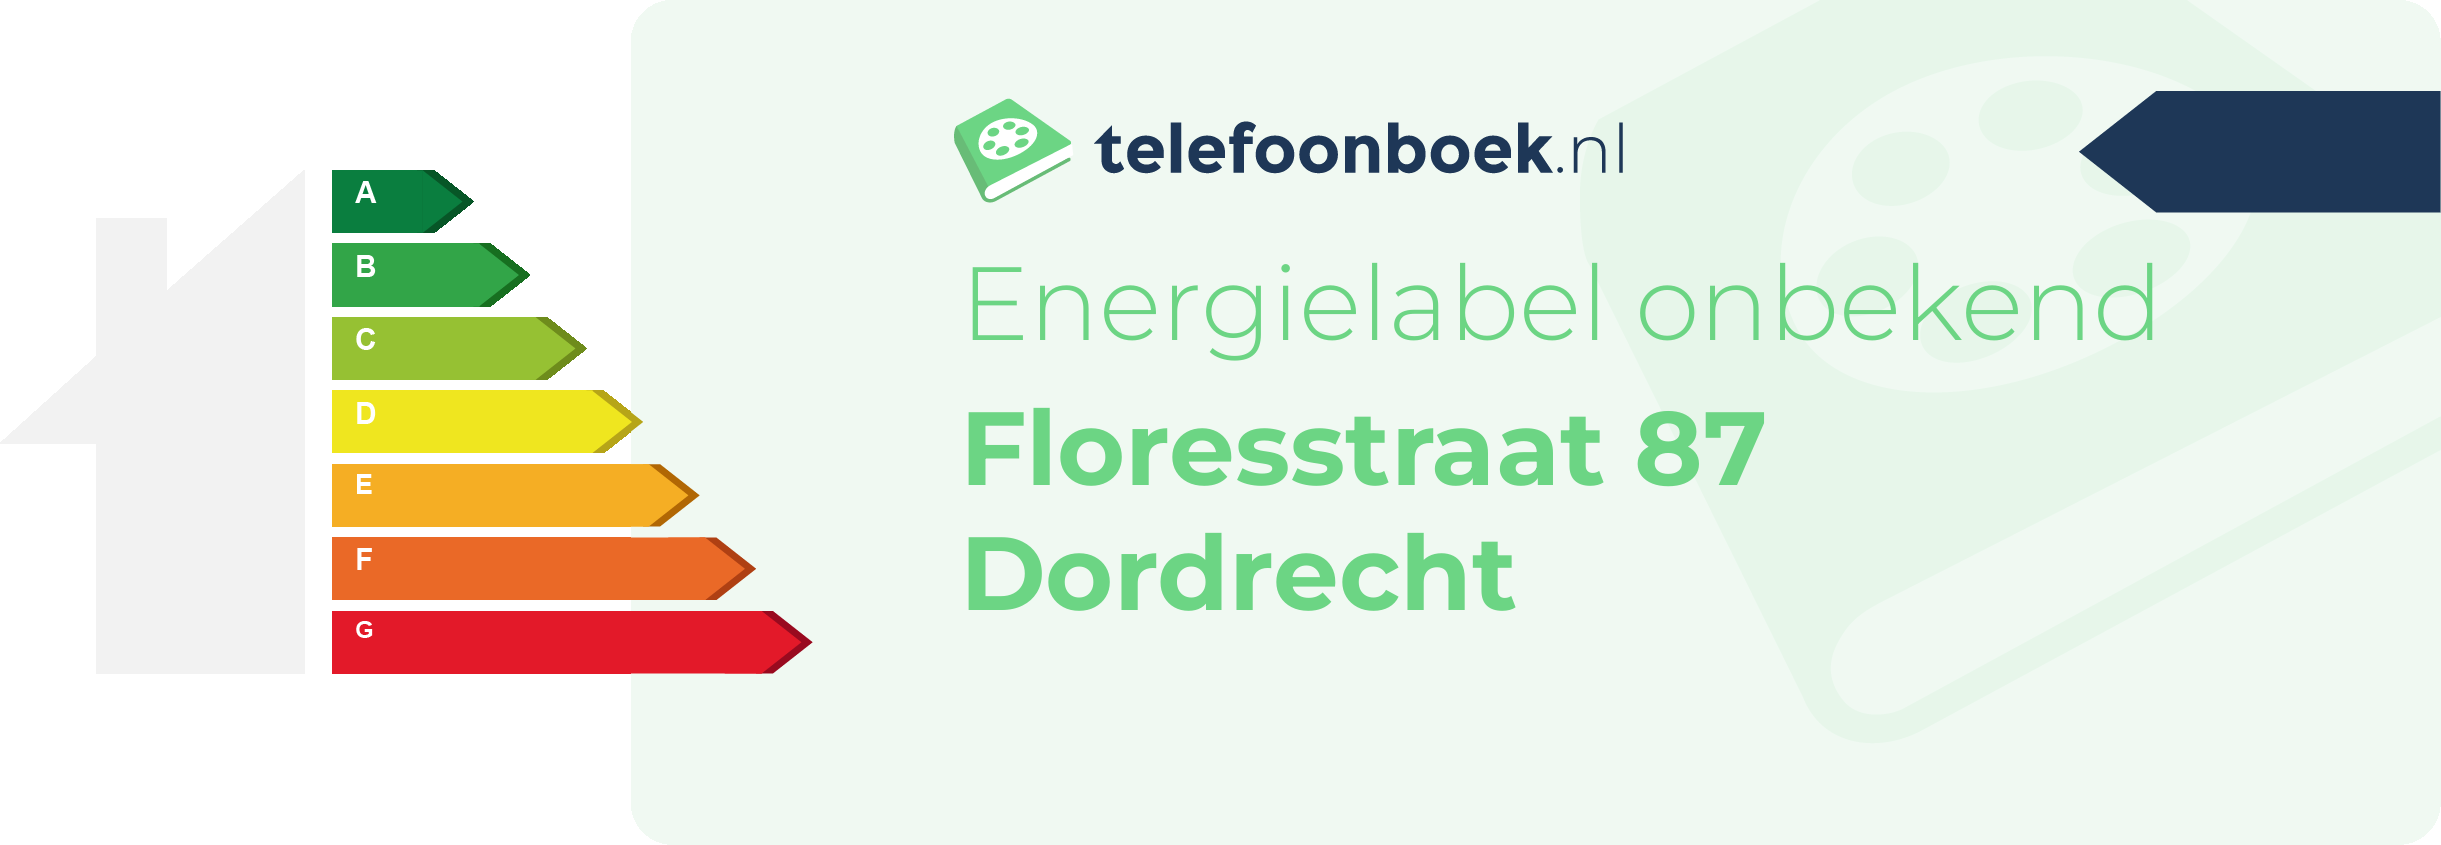 Energielabel Floresstraat 87 Dordrecht